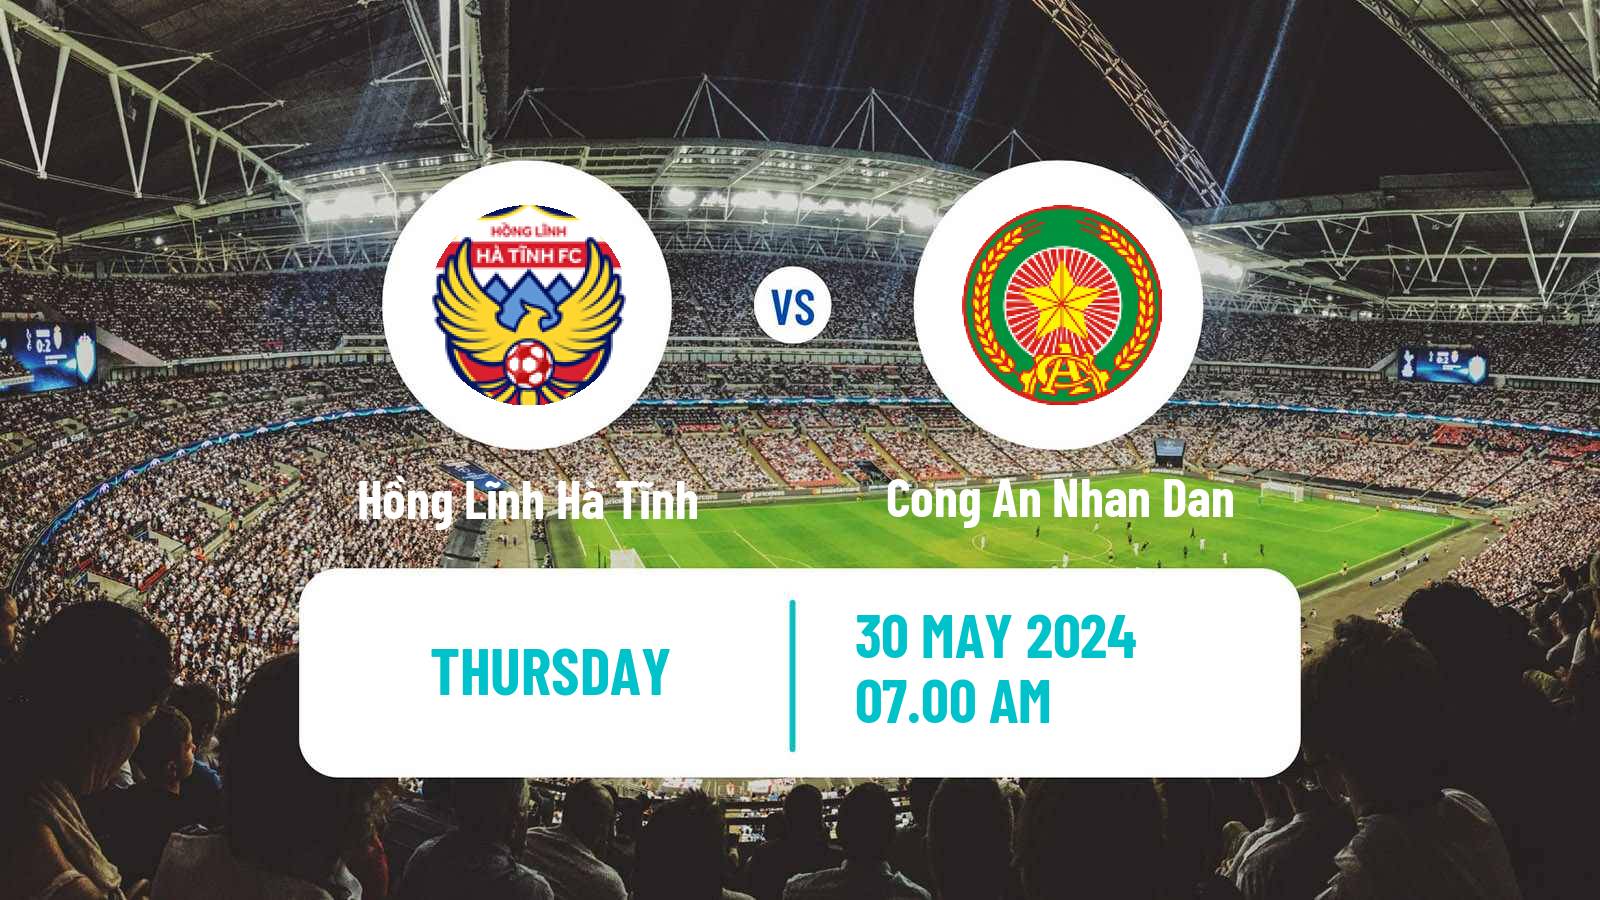 Soccer Vietnamese V League 1 Hồng Lĩnh Hà Tĩnh - Cong An Ha Noi